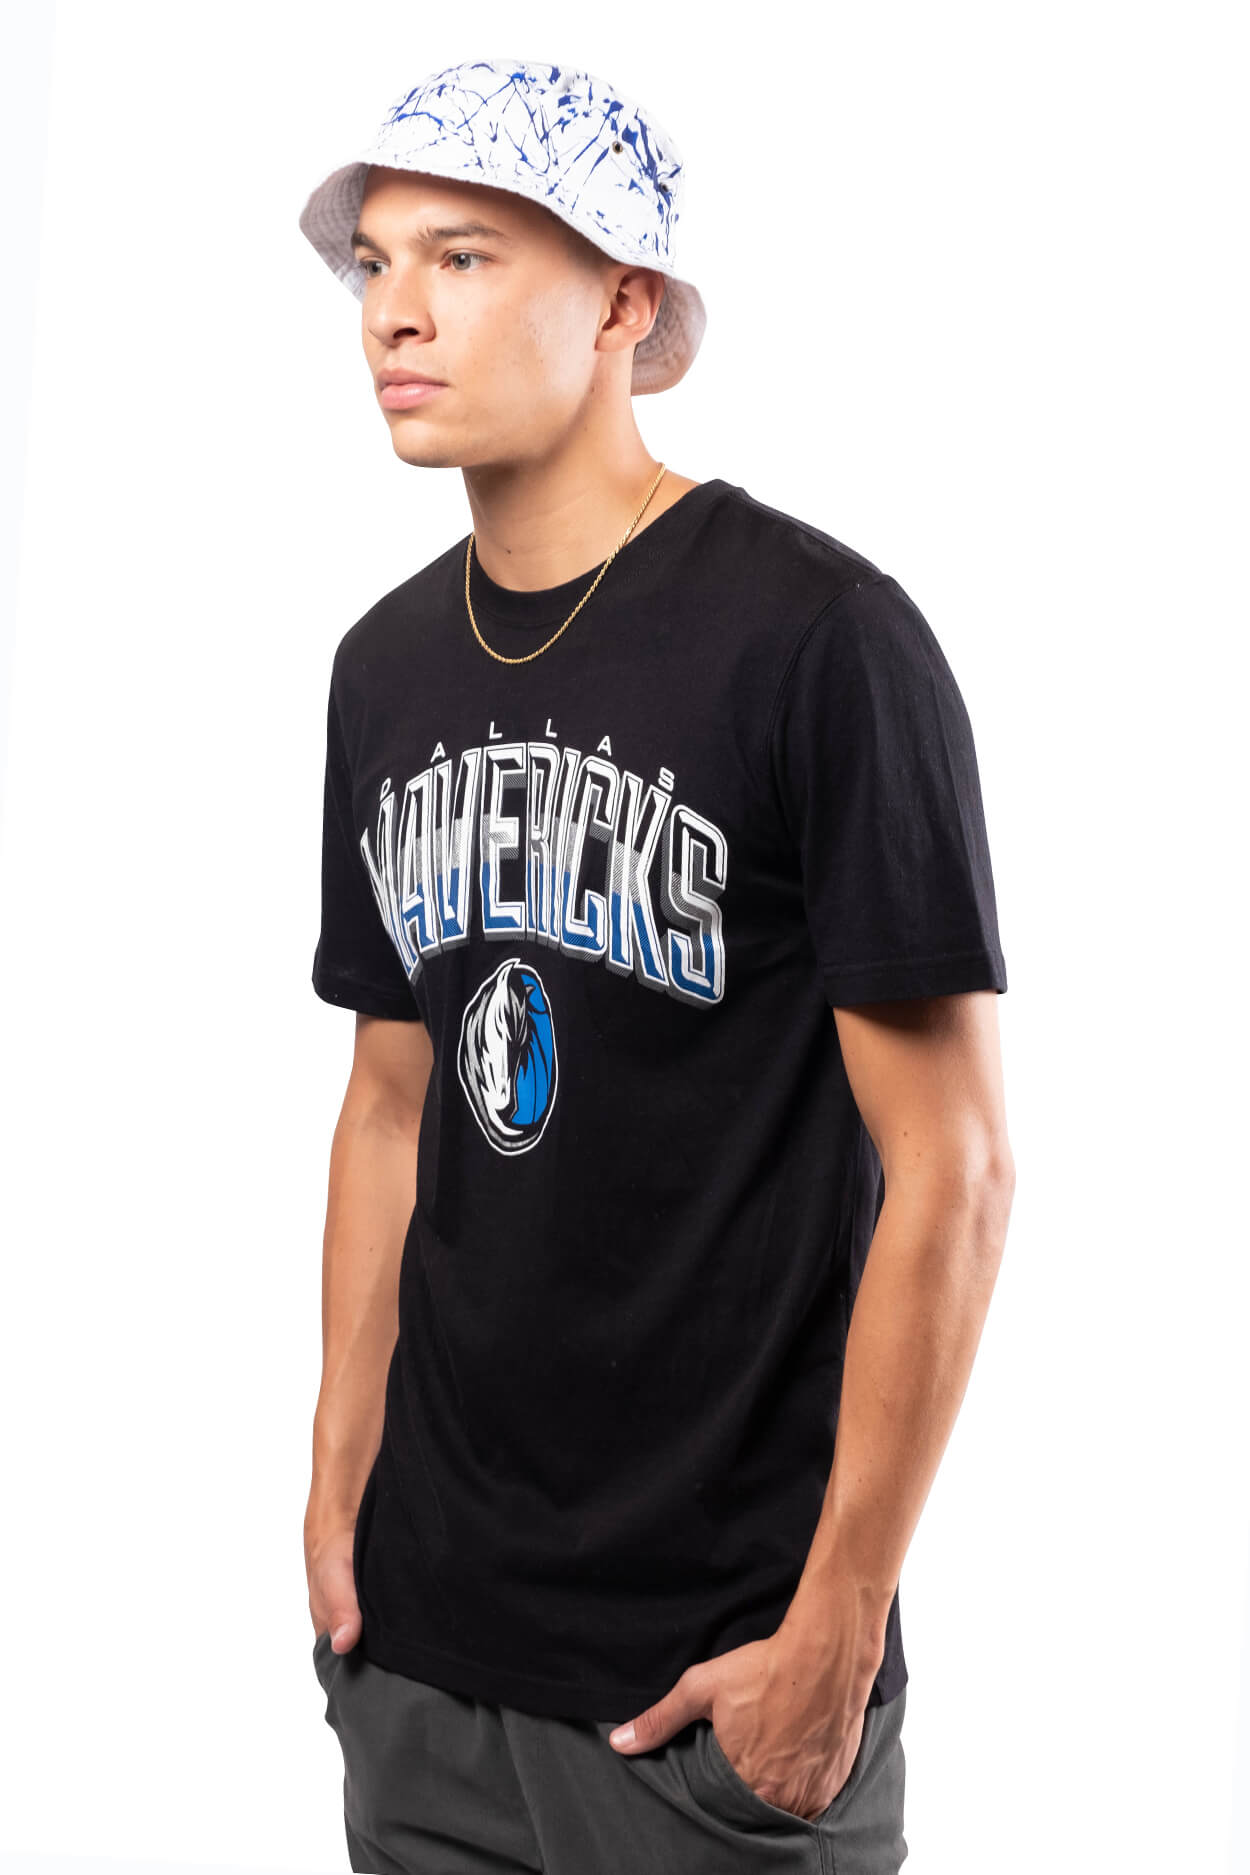 NBA Dallas Mavericks Men's Short Sleeve Tee|Dallas Mavericks